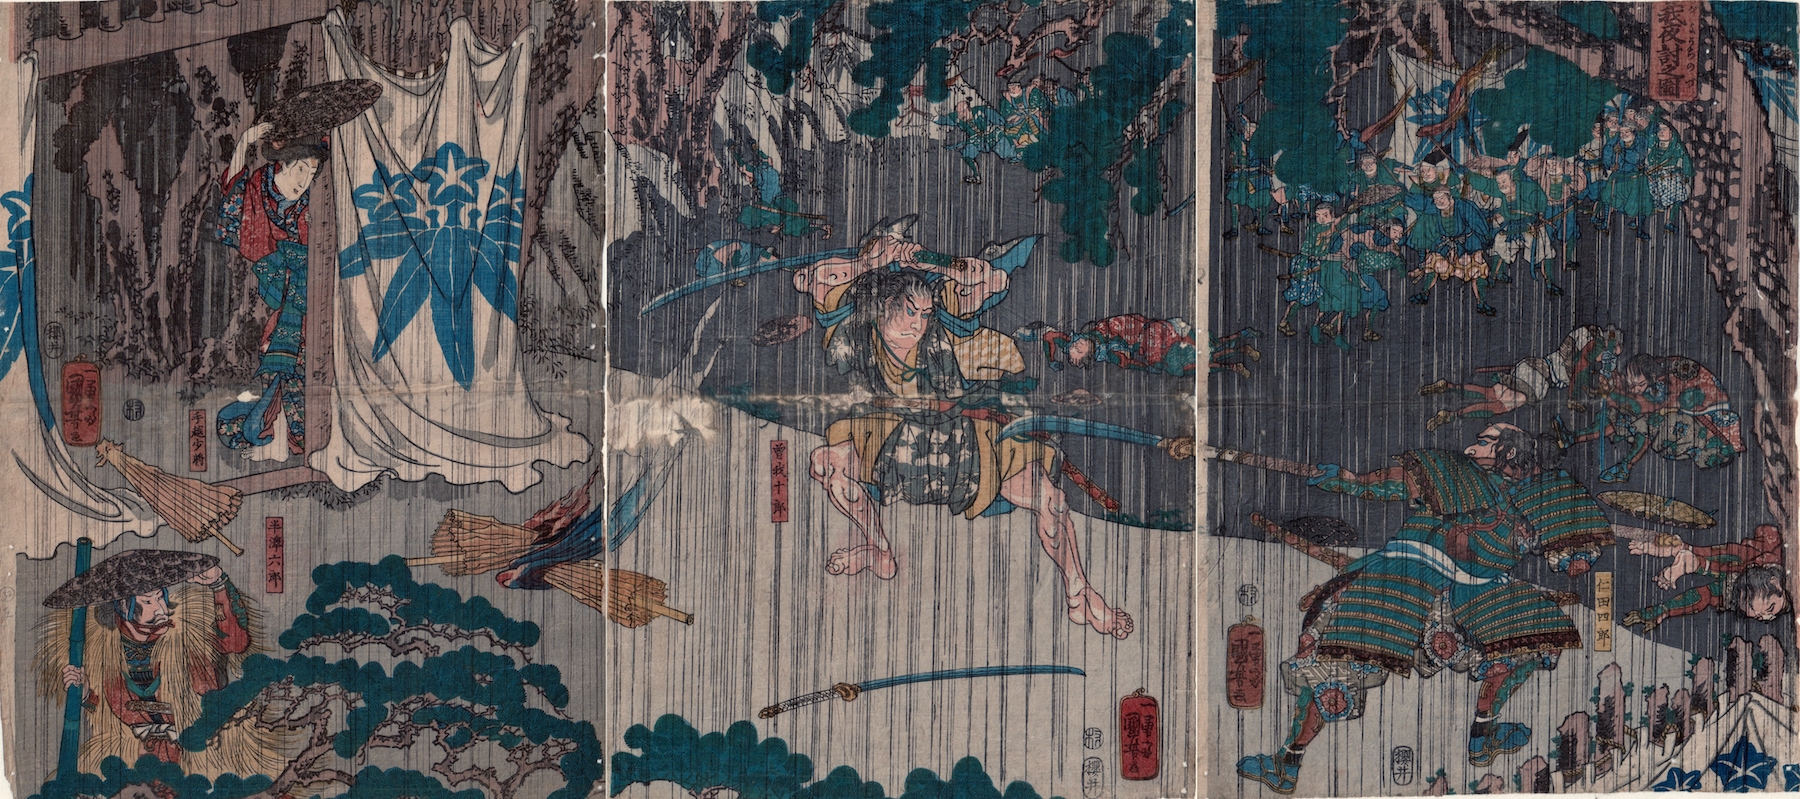 dancing rain (quanzhi gaoshou) drawn by kurotaru